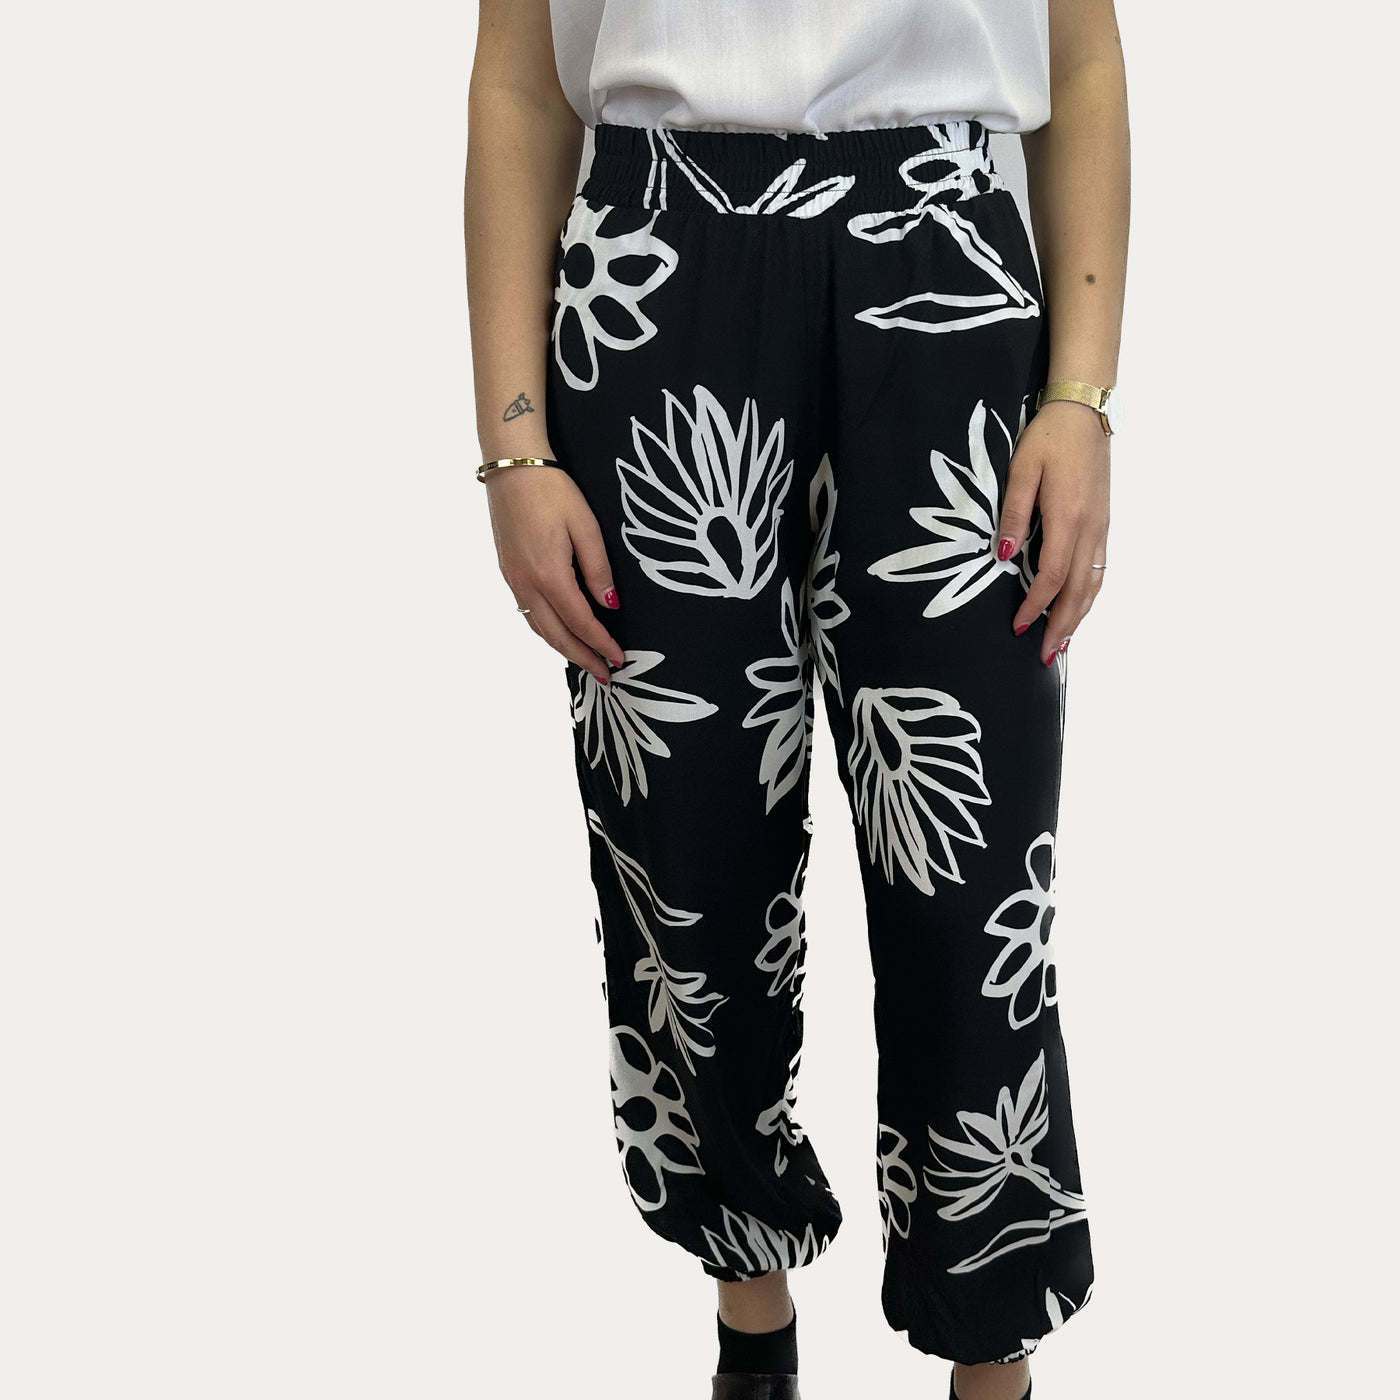 PAOLA TIENFORTI - Pantalone Donna con fiori